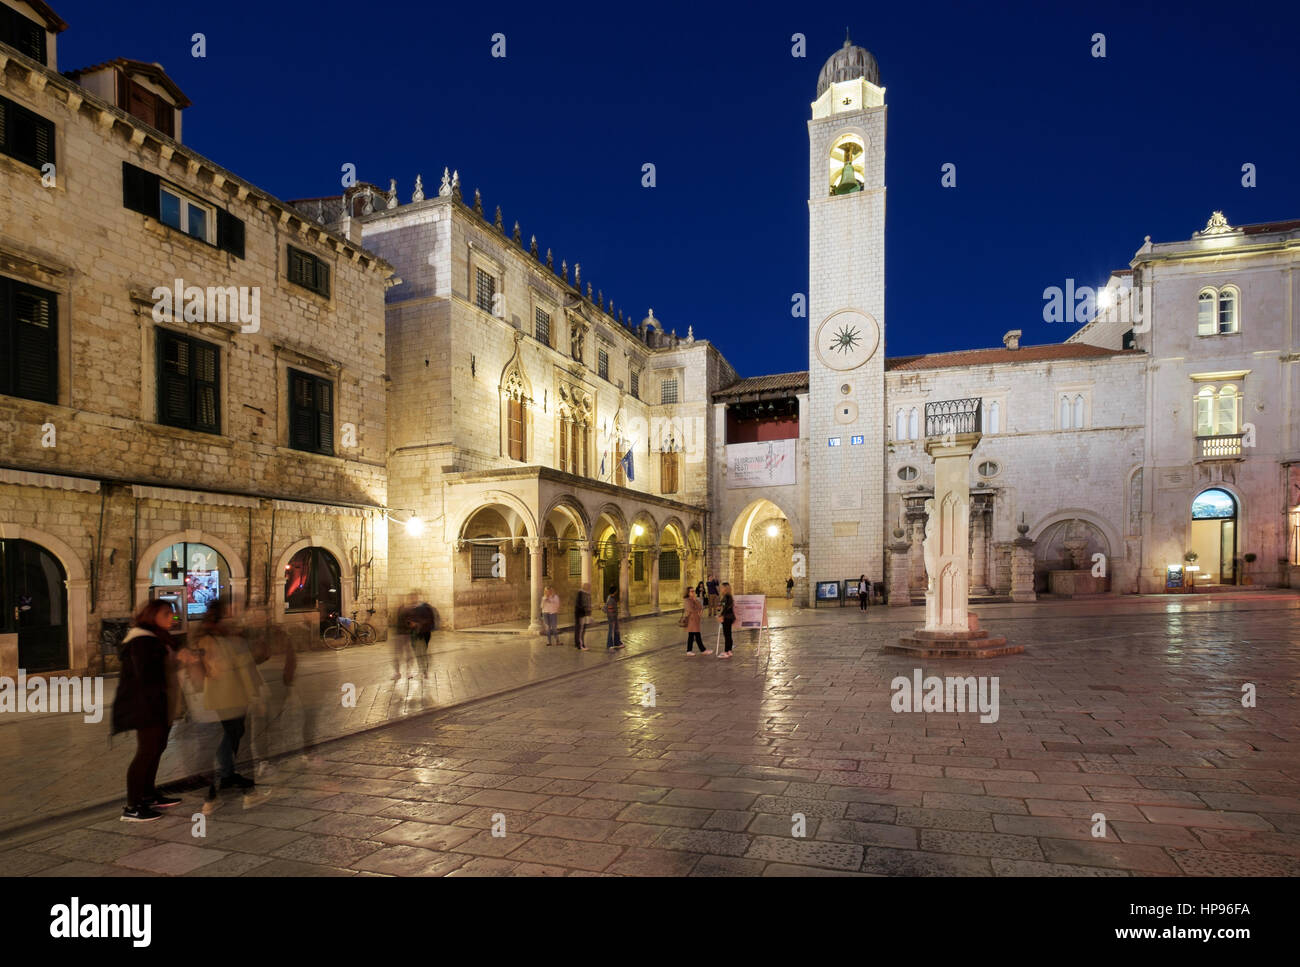 Le clocher et la colonne d'Orlando, la place Luza, Placa (Stradun), début de soirée, Dubrovnik, Croatie. Banque D'Images